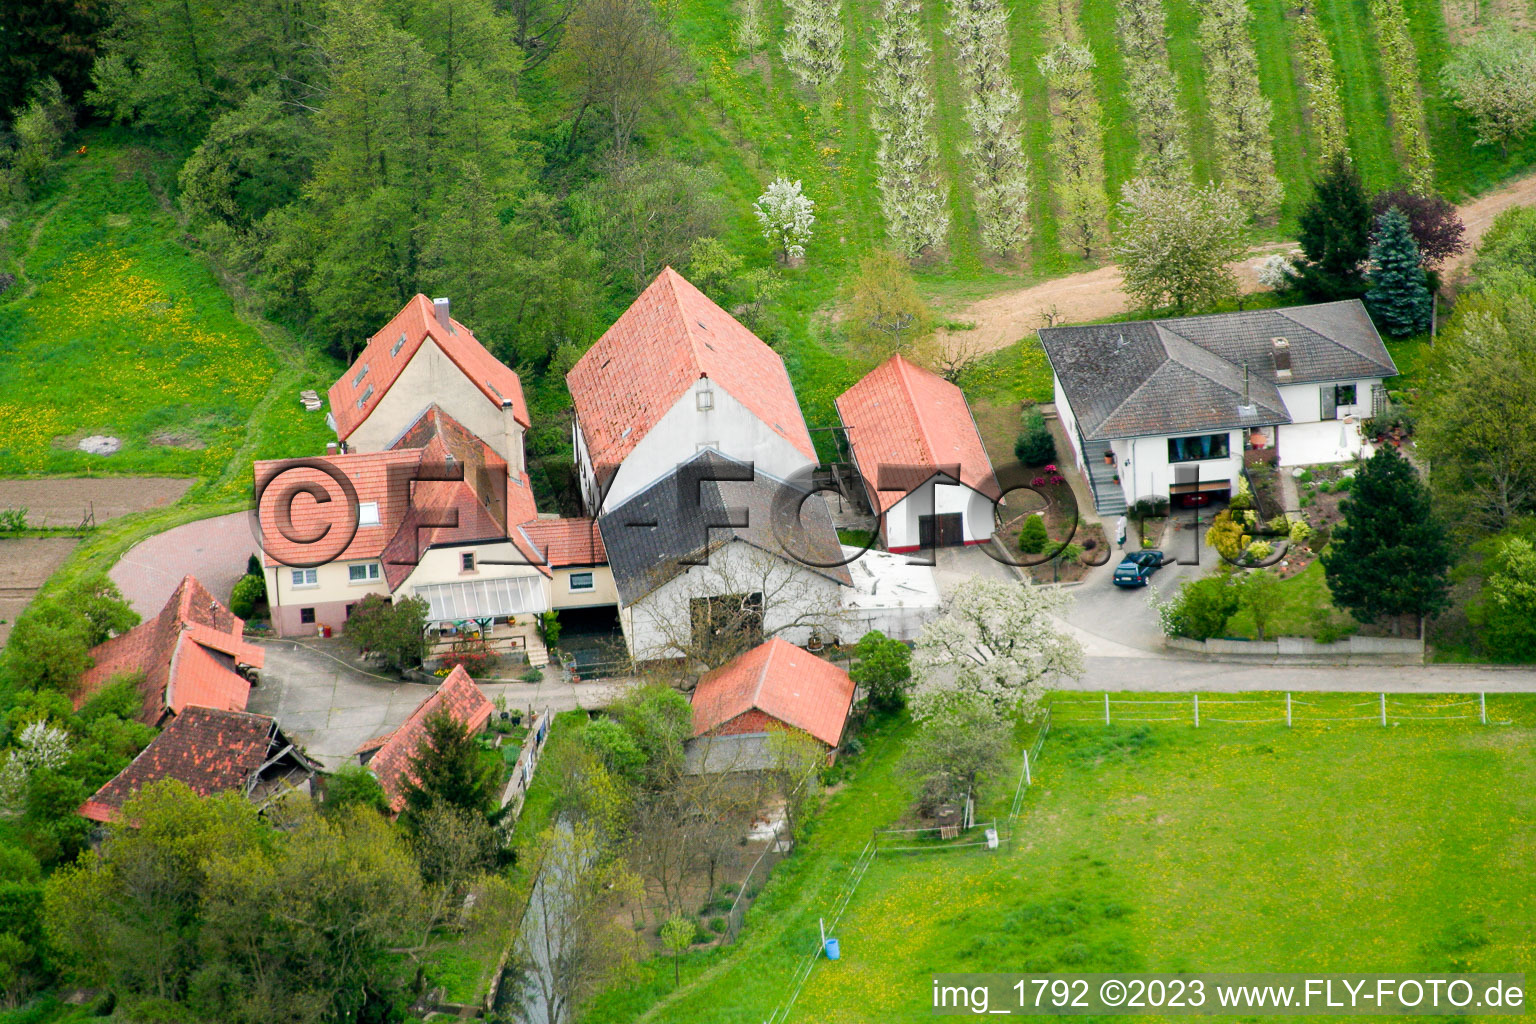 Winden dans le département Rhénanie-Palatinat, Allemagne vu d'un drone